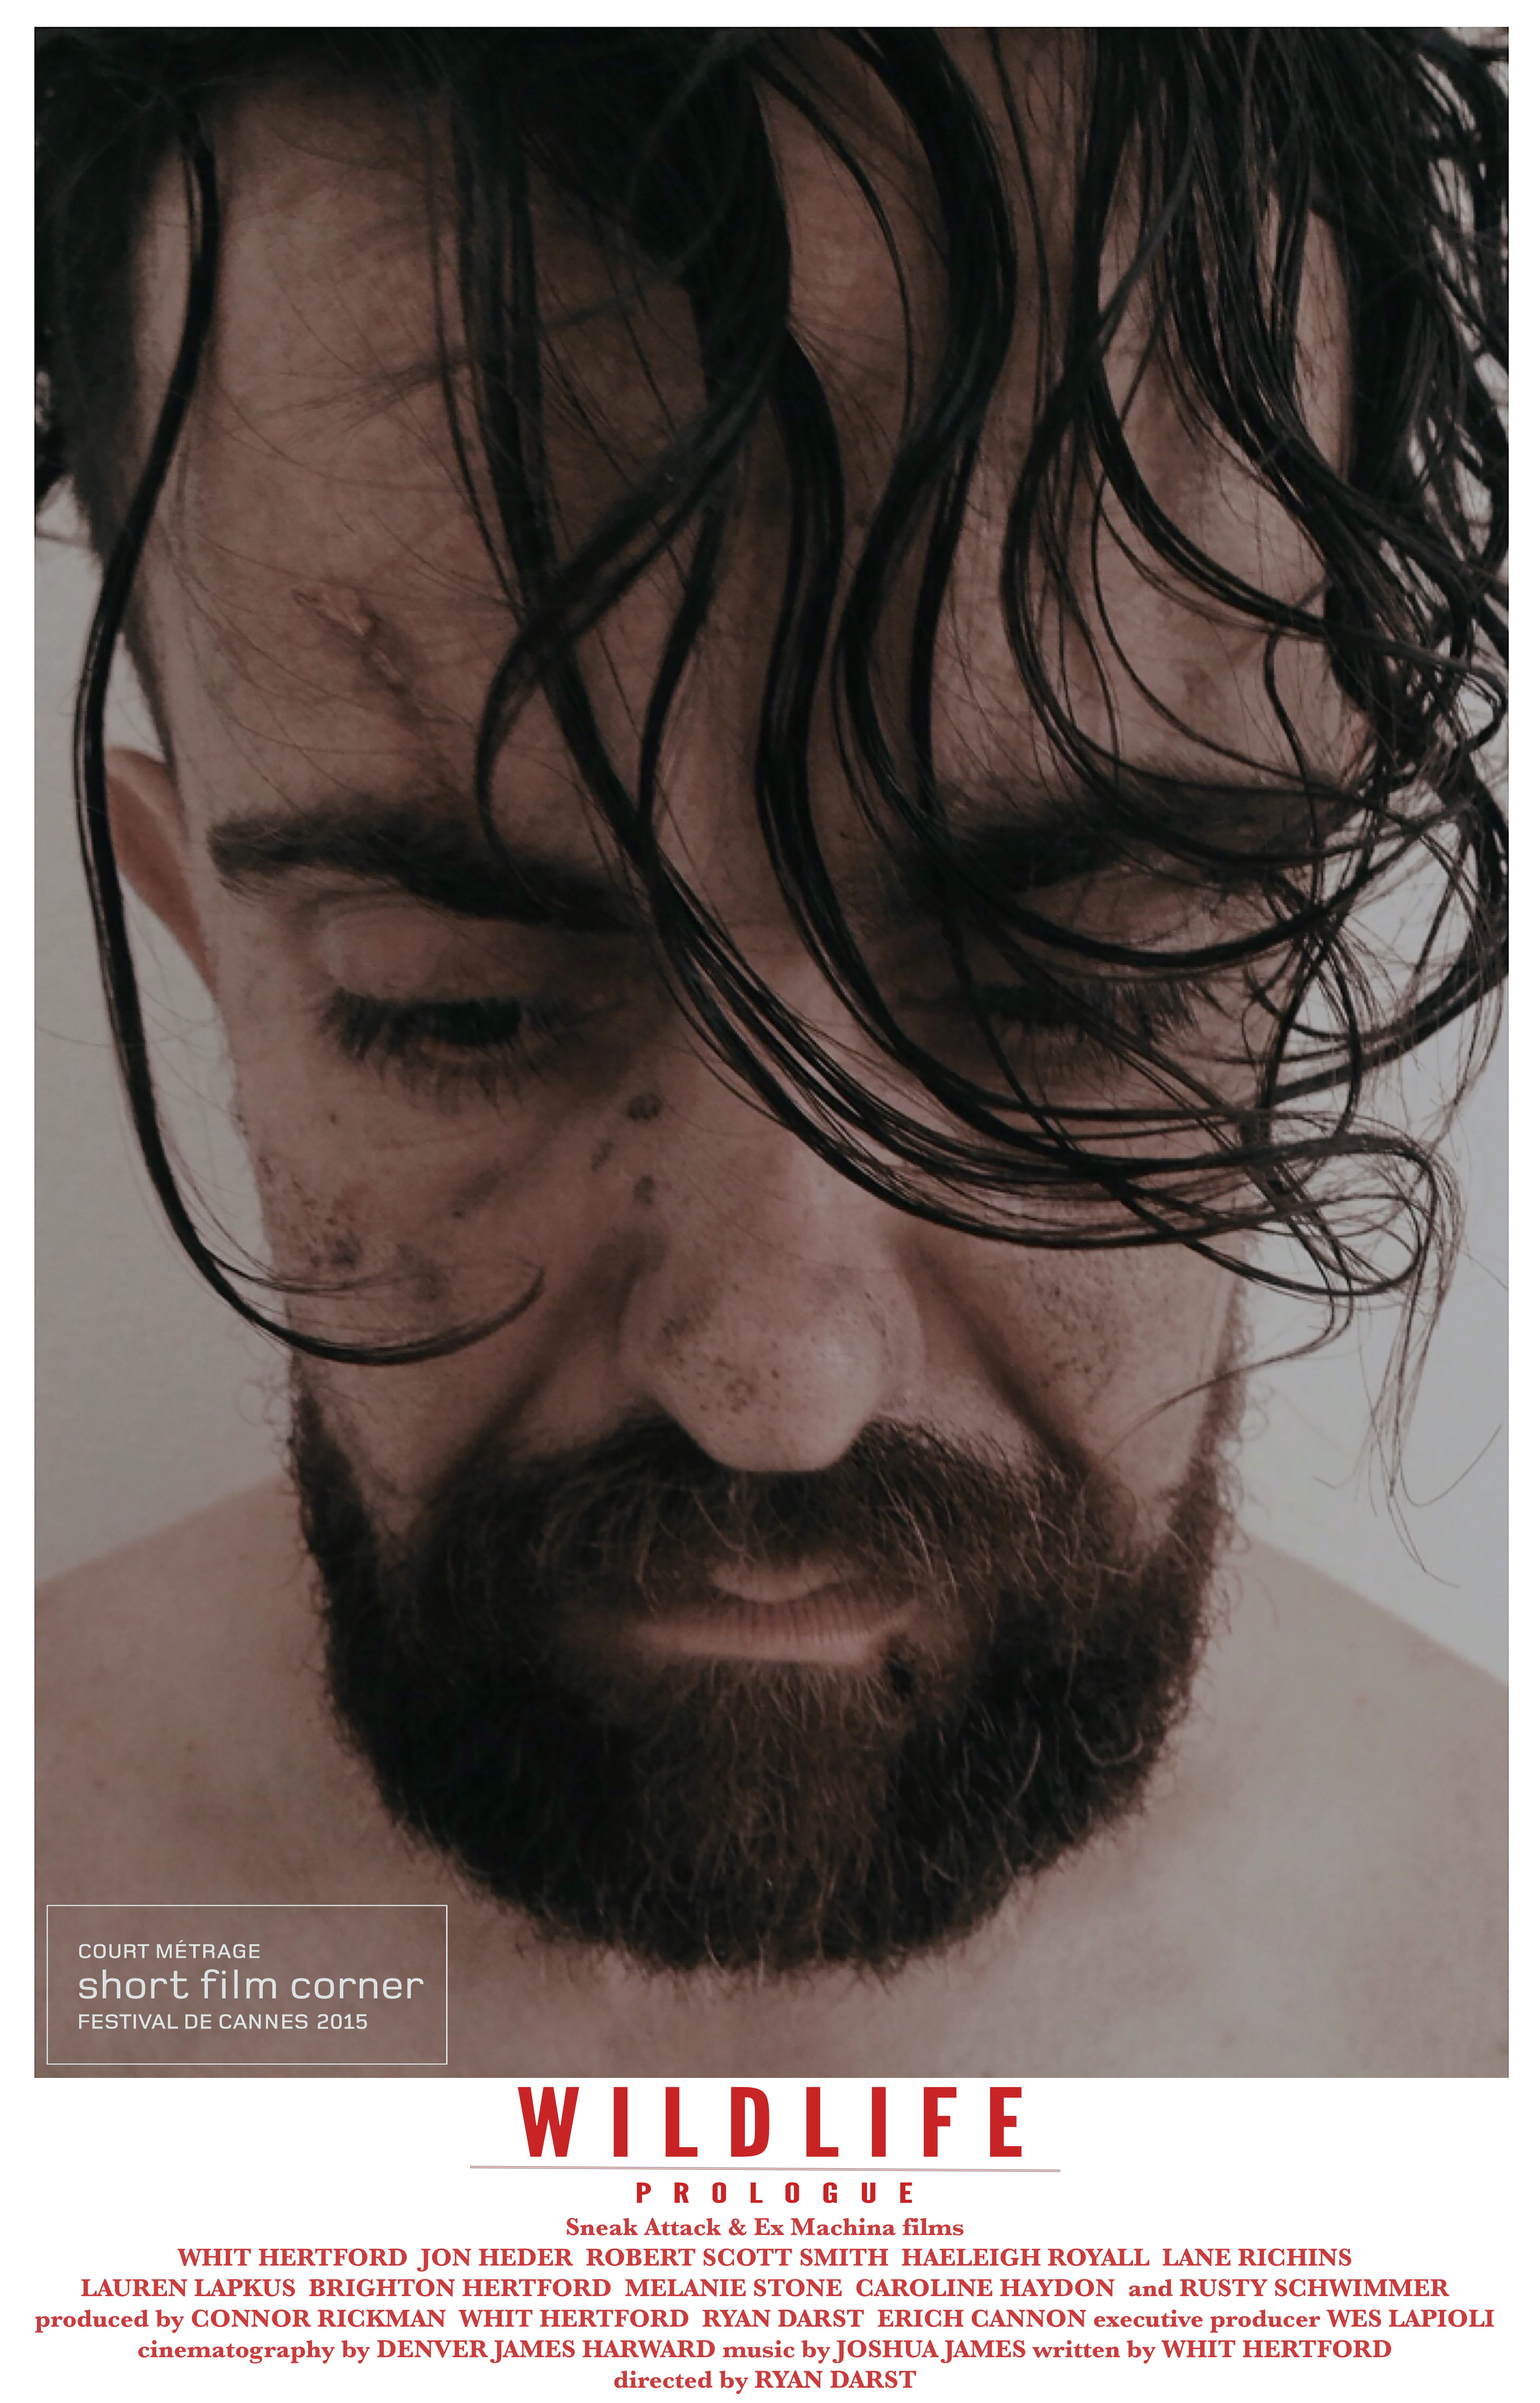 Official Festival De Cannes 2015 poster